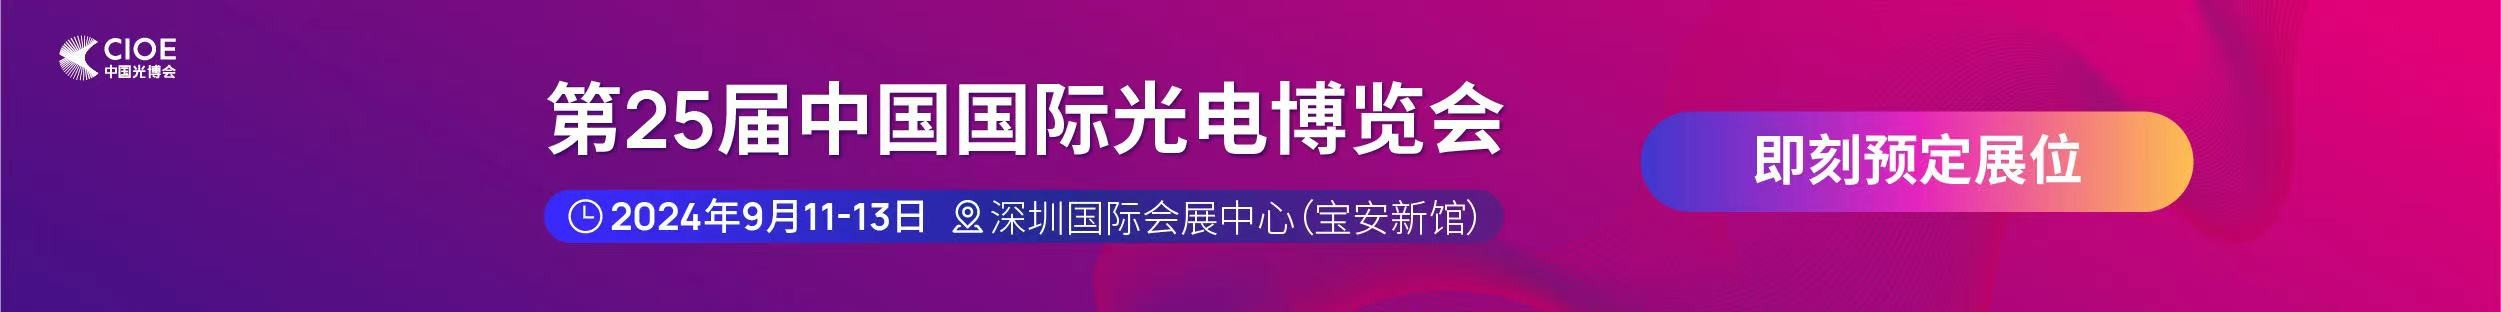 长盈通公司受邀参展第25届中国国际光电博览会